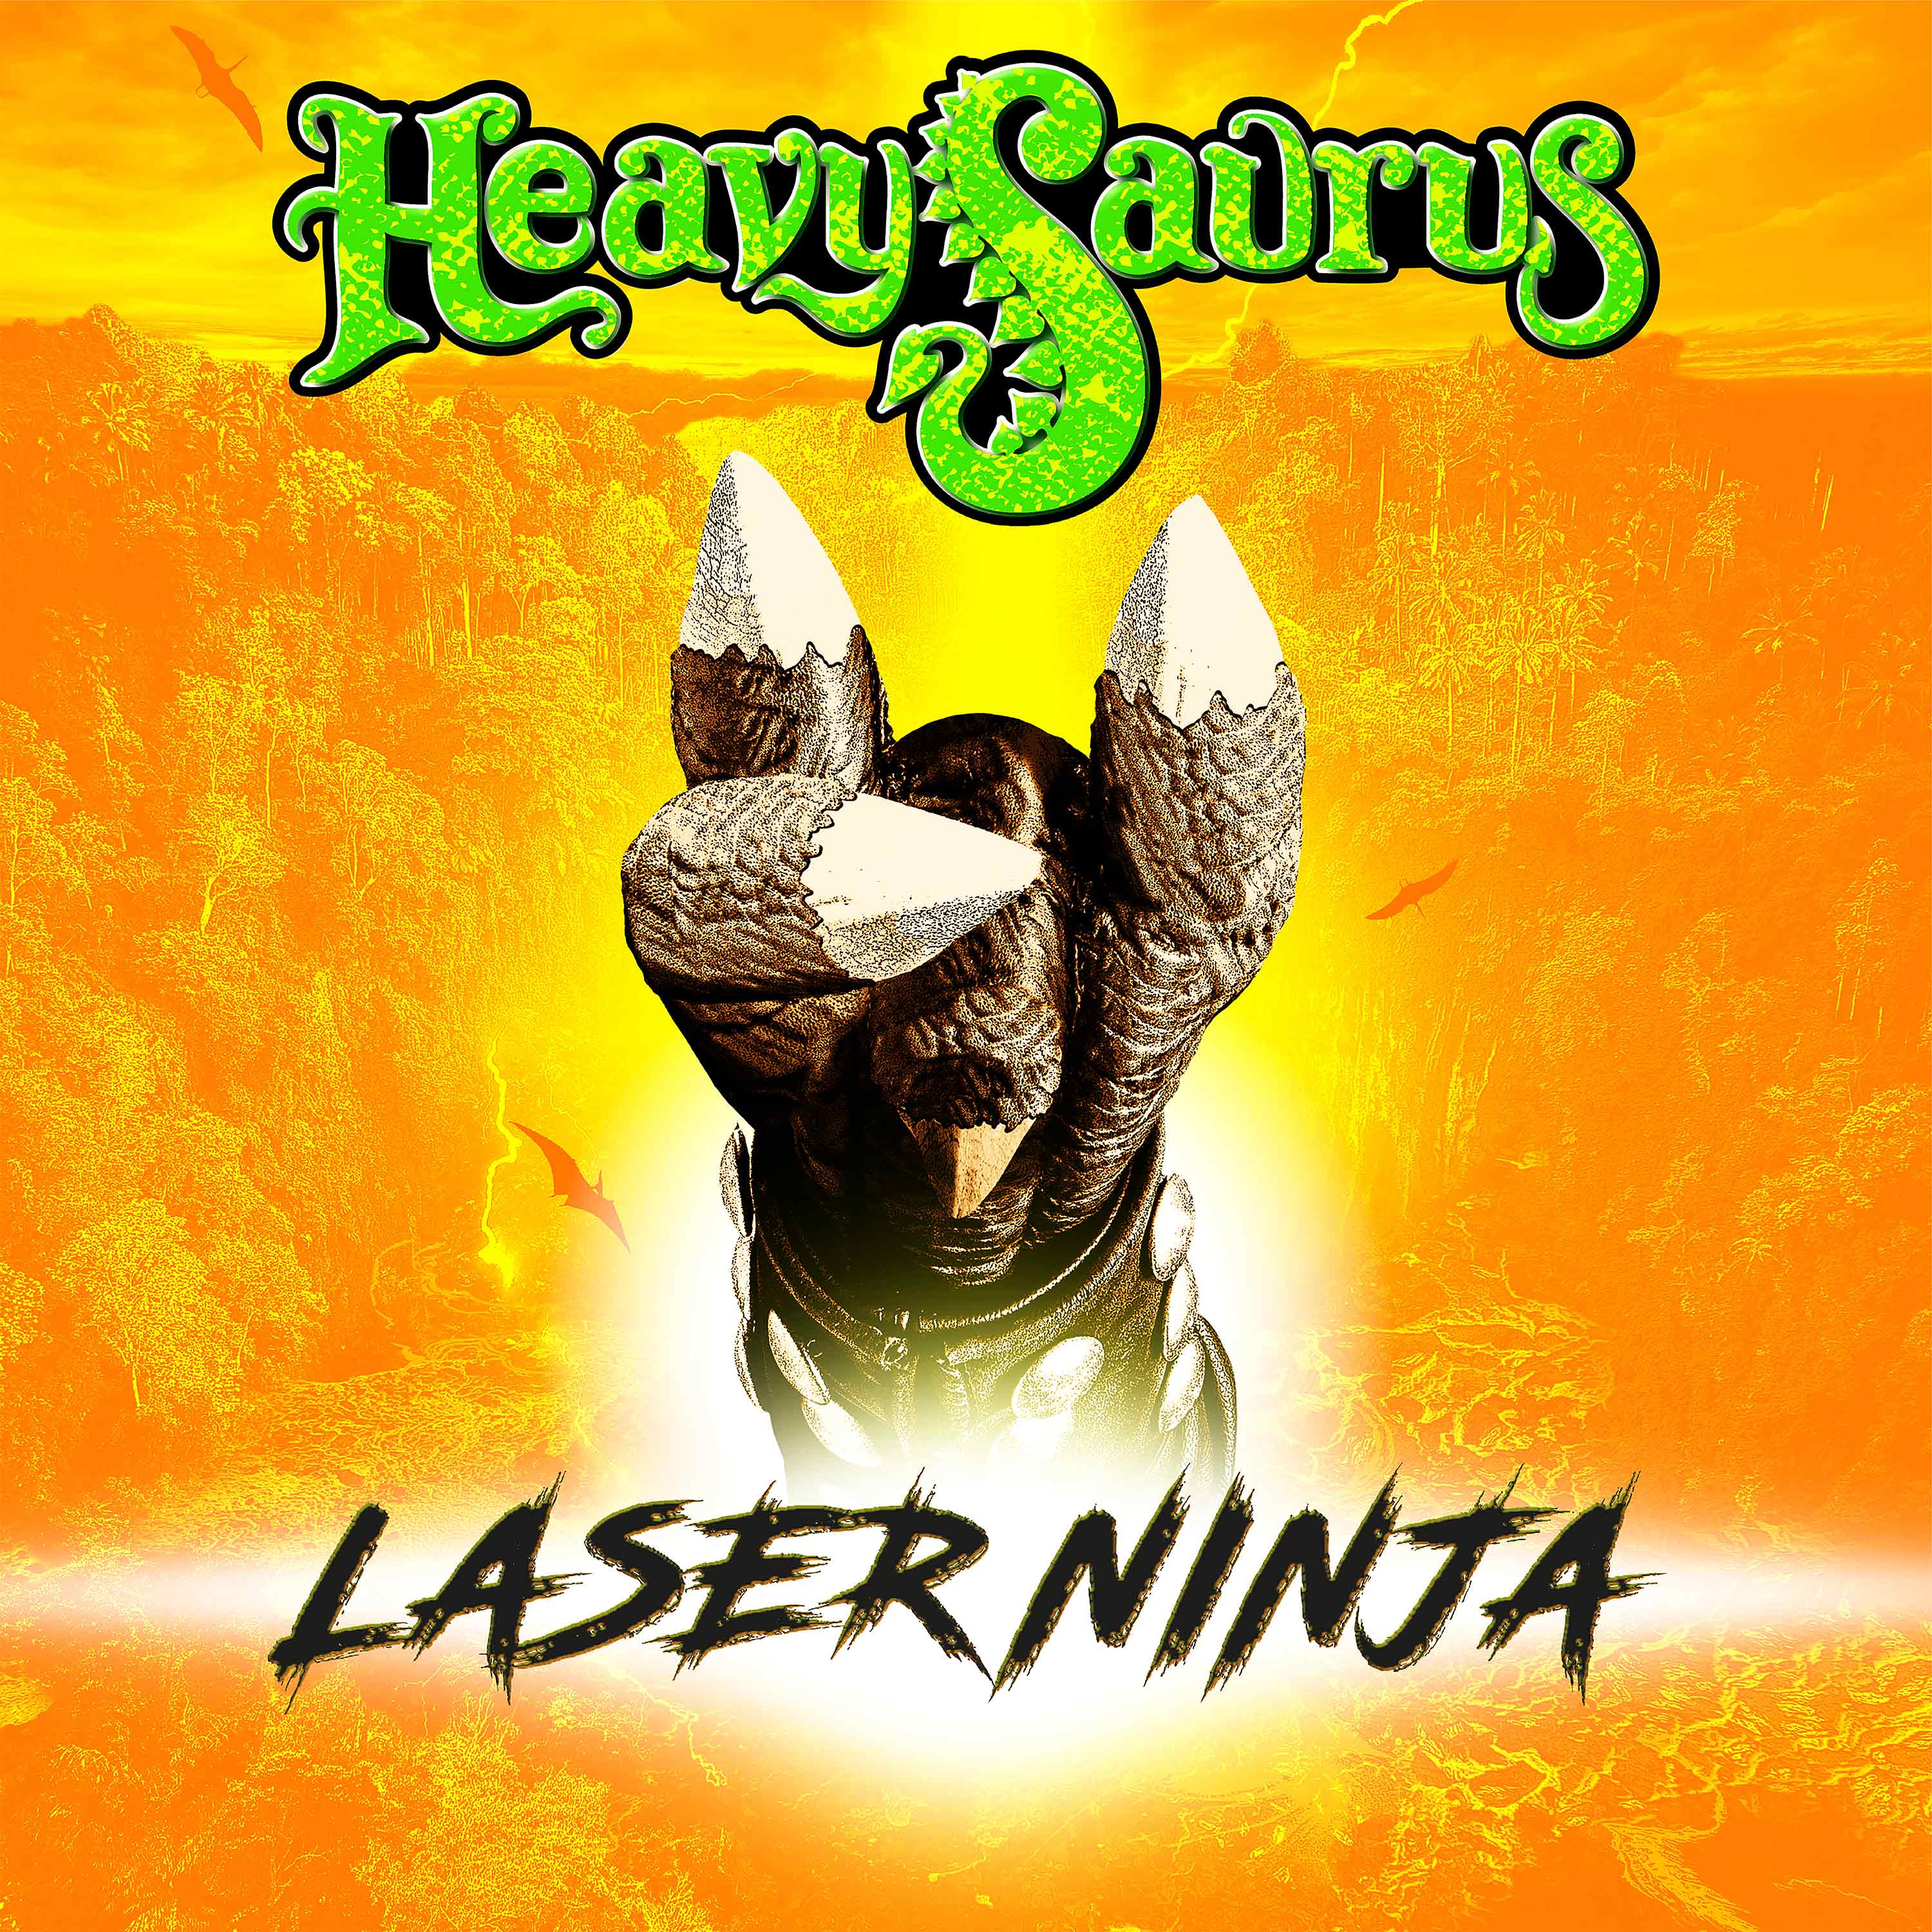 Heavysaurus: Laser Ninja